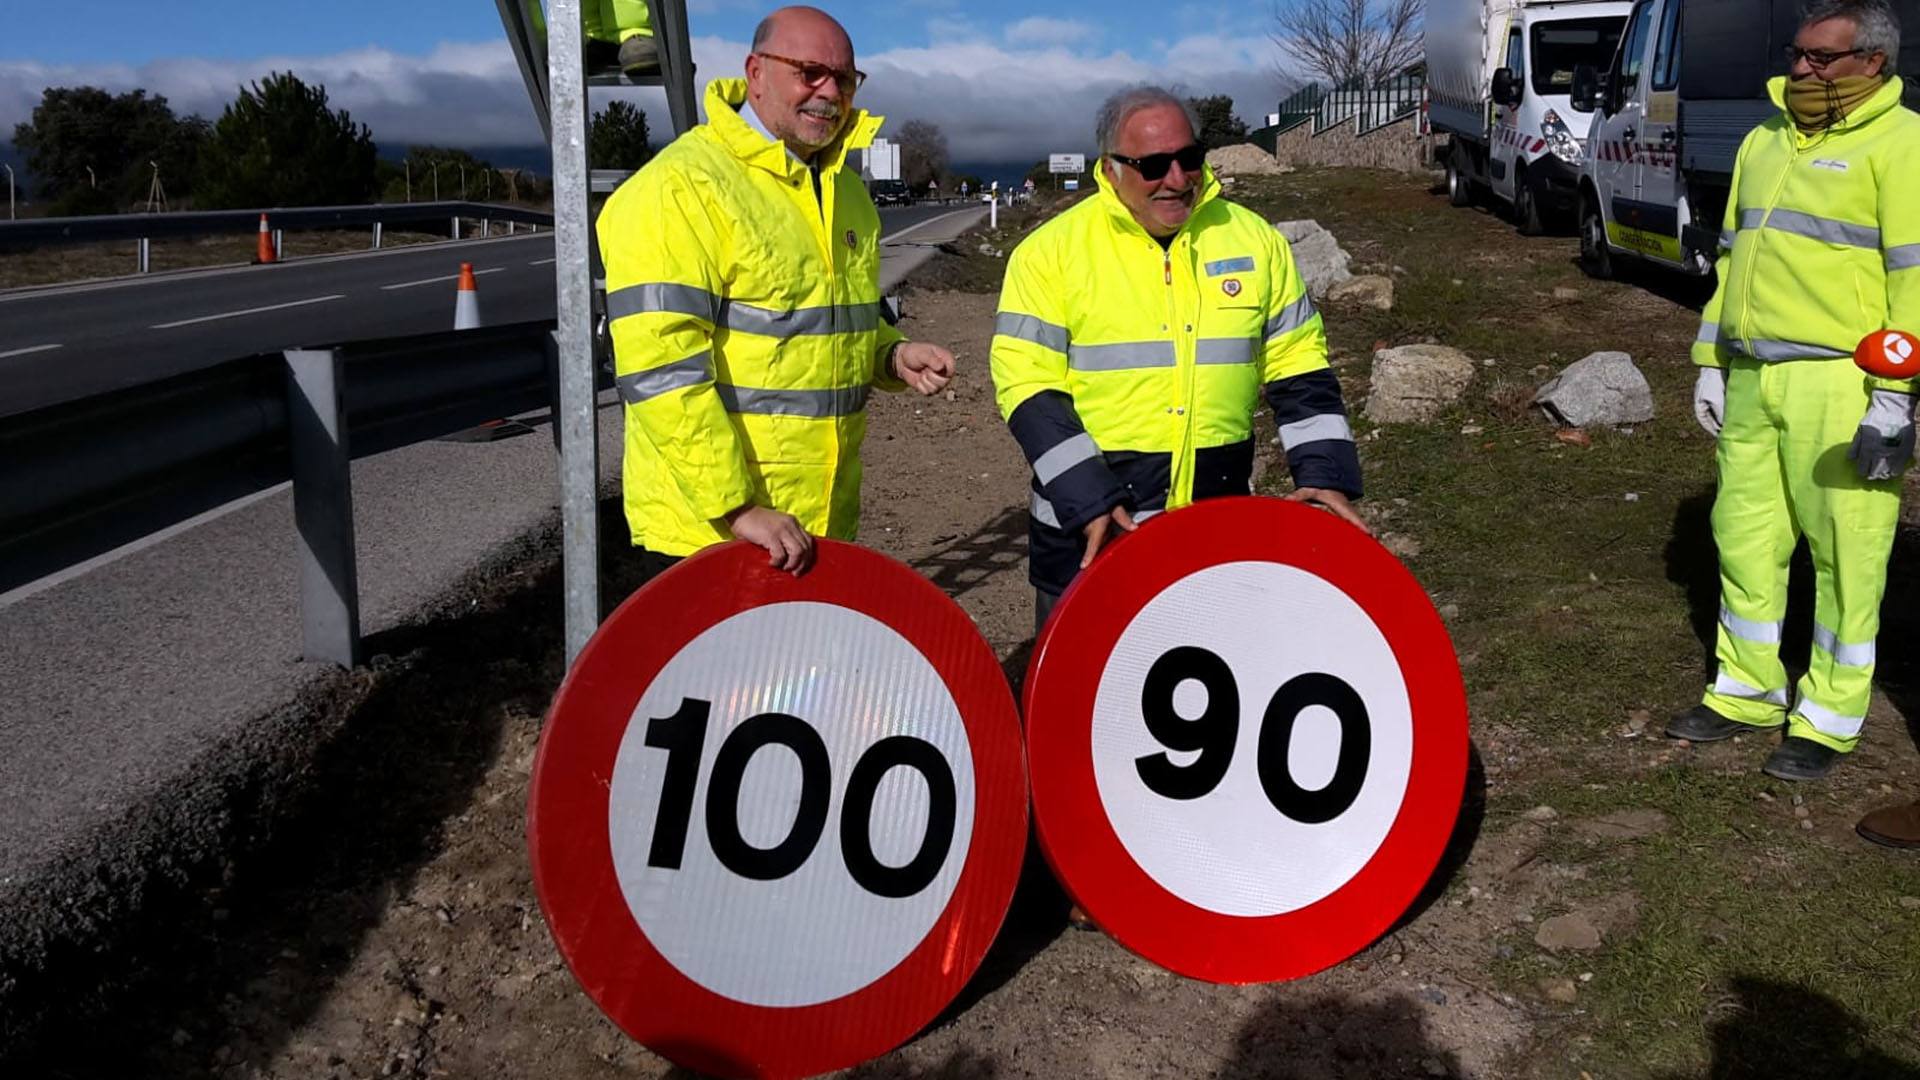 Hoy entra en vigor la bajada de 100 a 90 km/h en carreteras convencionales